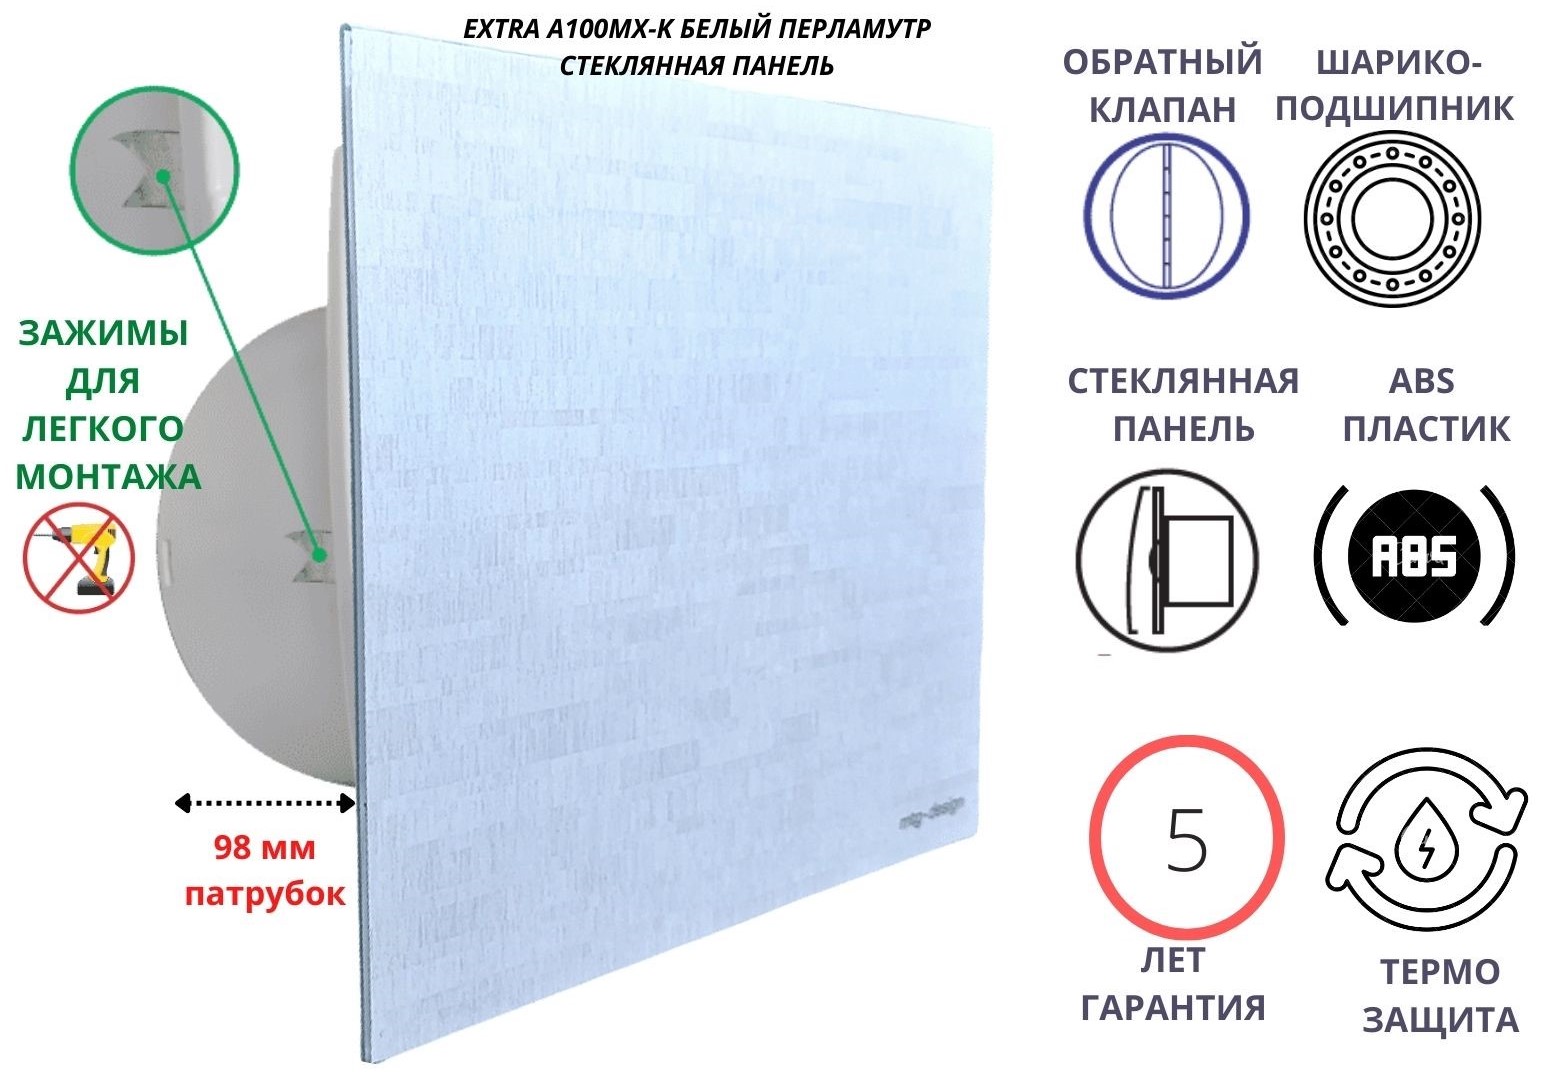 Вентилятор D100мм со стеклянной панелью белая керамика EXTRA A100МX-K, Сербия вентилятор d100мм со стеклянной панелью белая керамика extra a100м k сербия